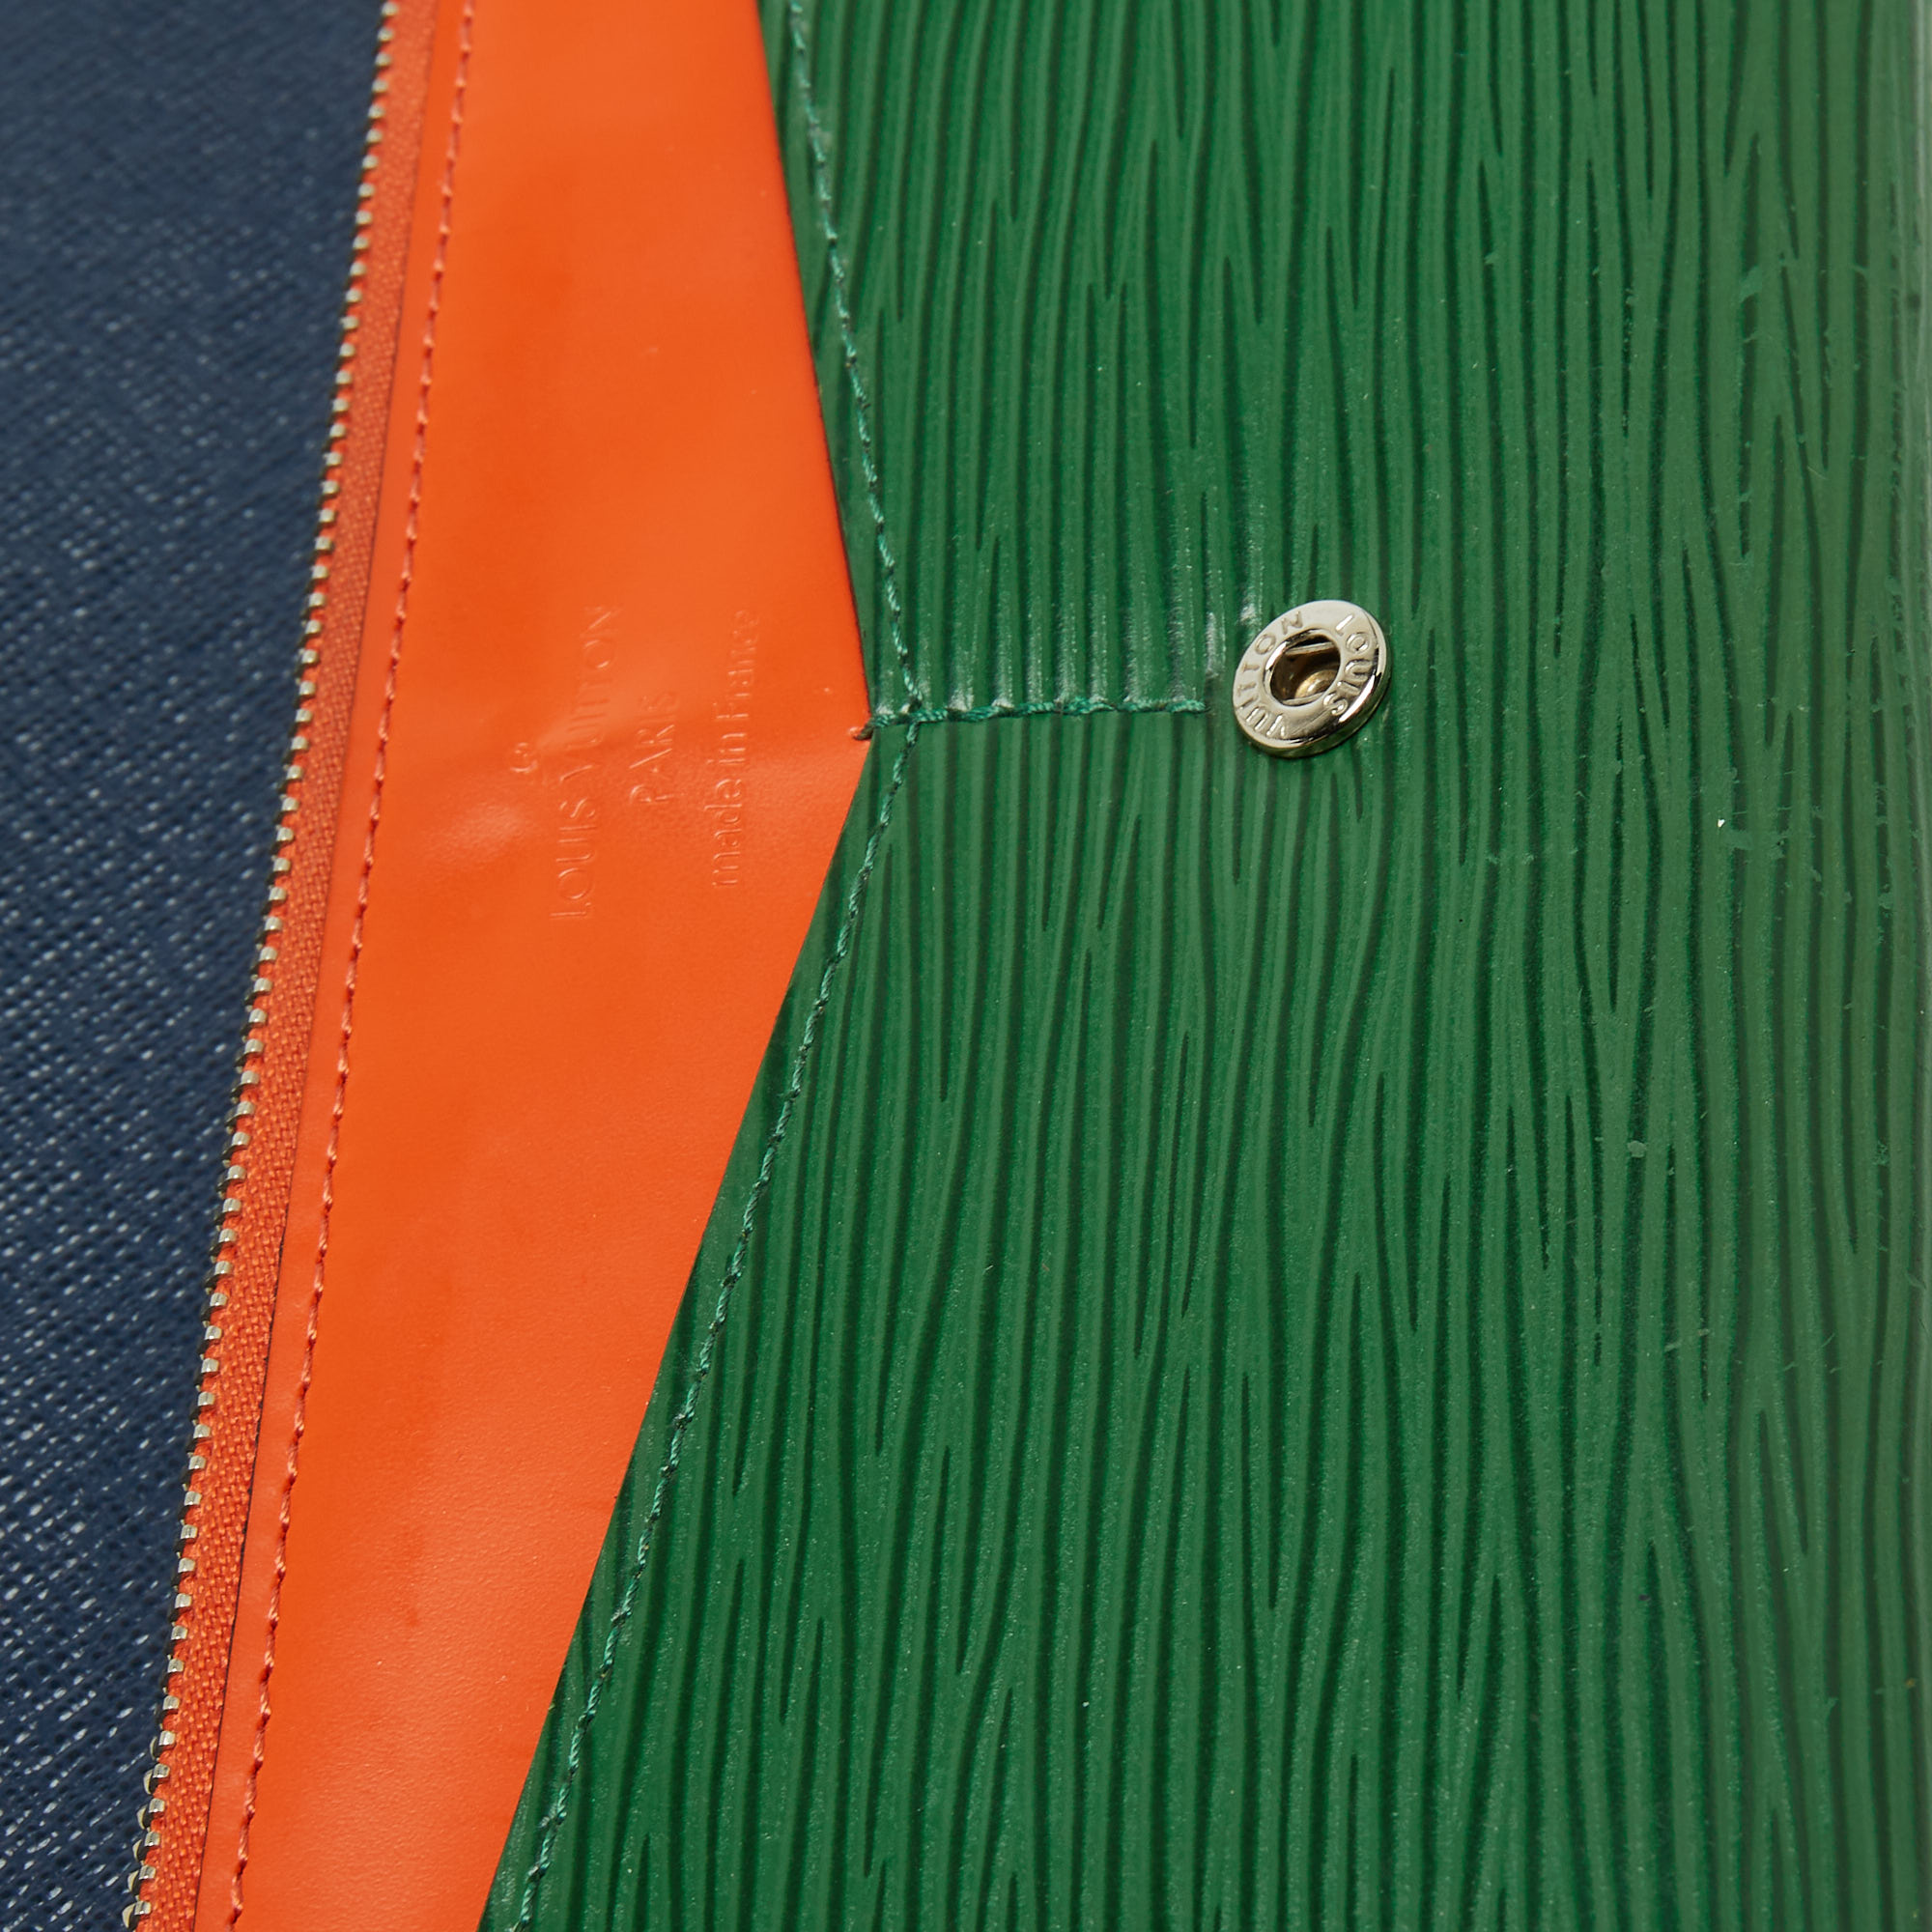 Louis Vuitton Tricolor Epi Leather Flore Wallet